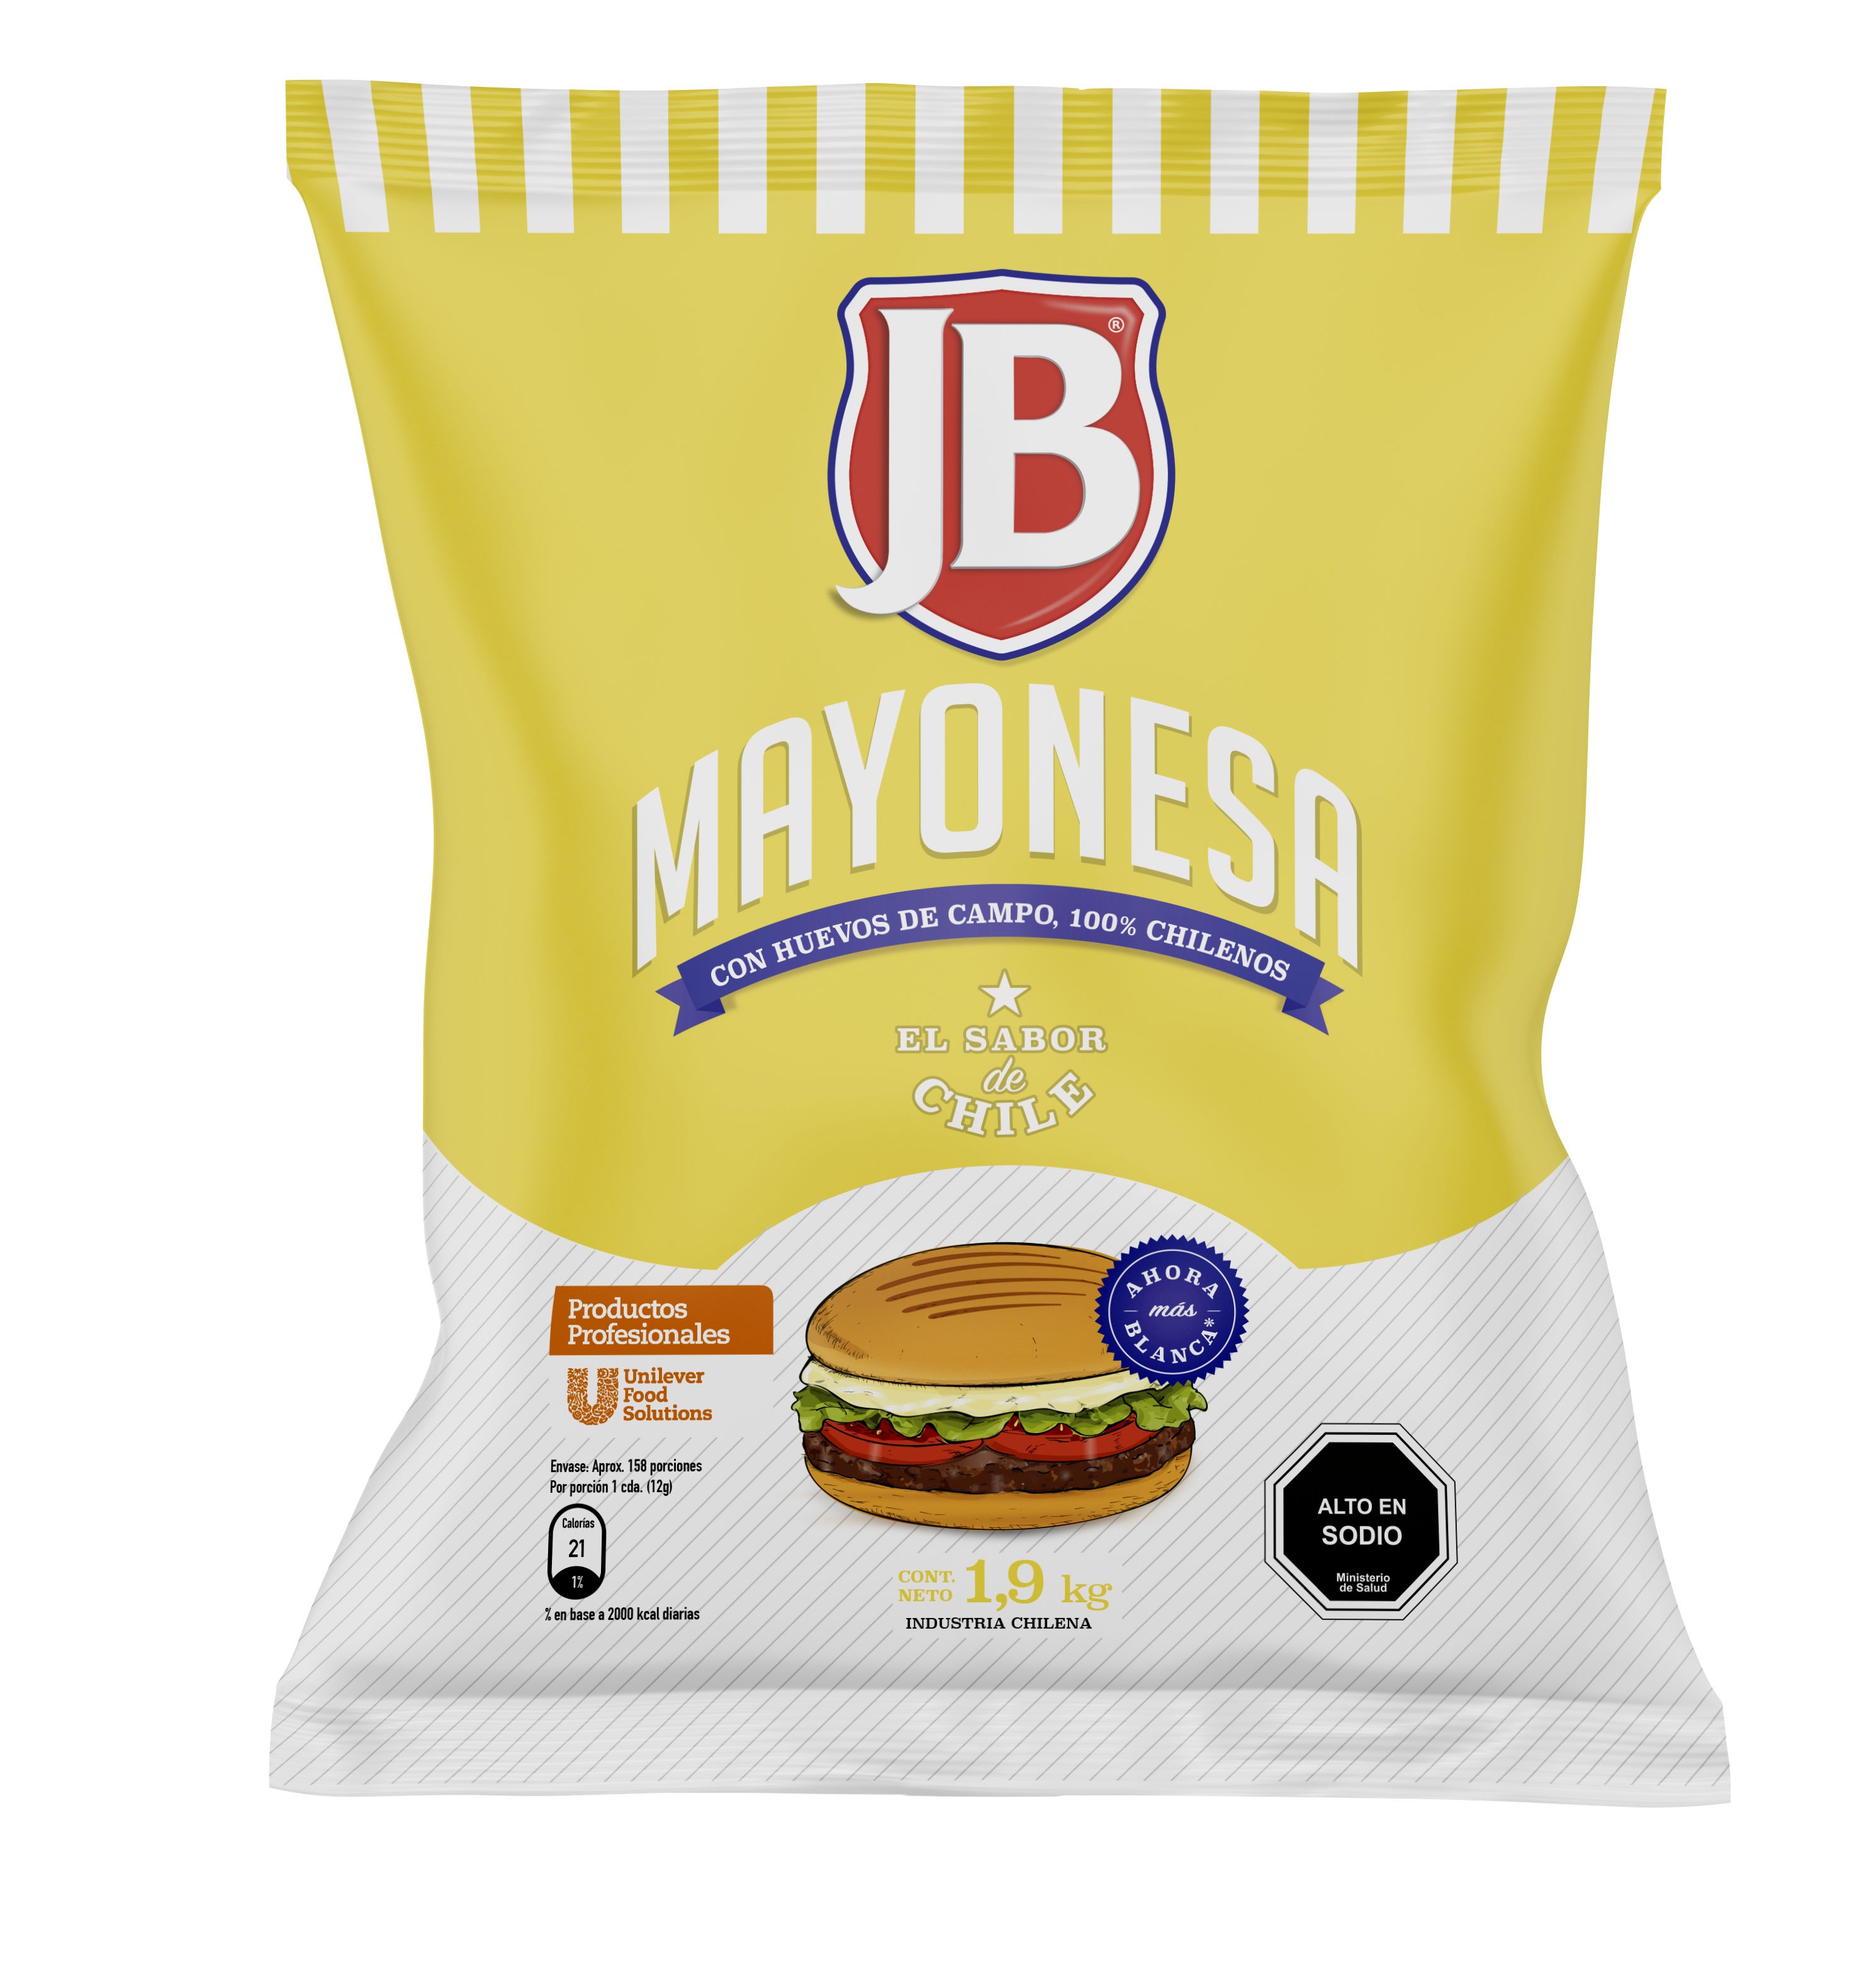 Mayonesa JB 1.9KG - Mayonesa JB, el sabor de Chile!